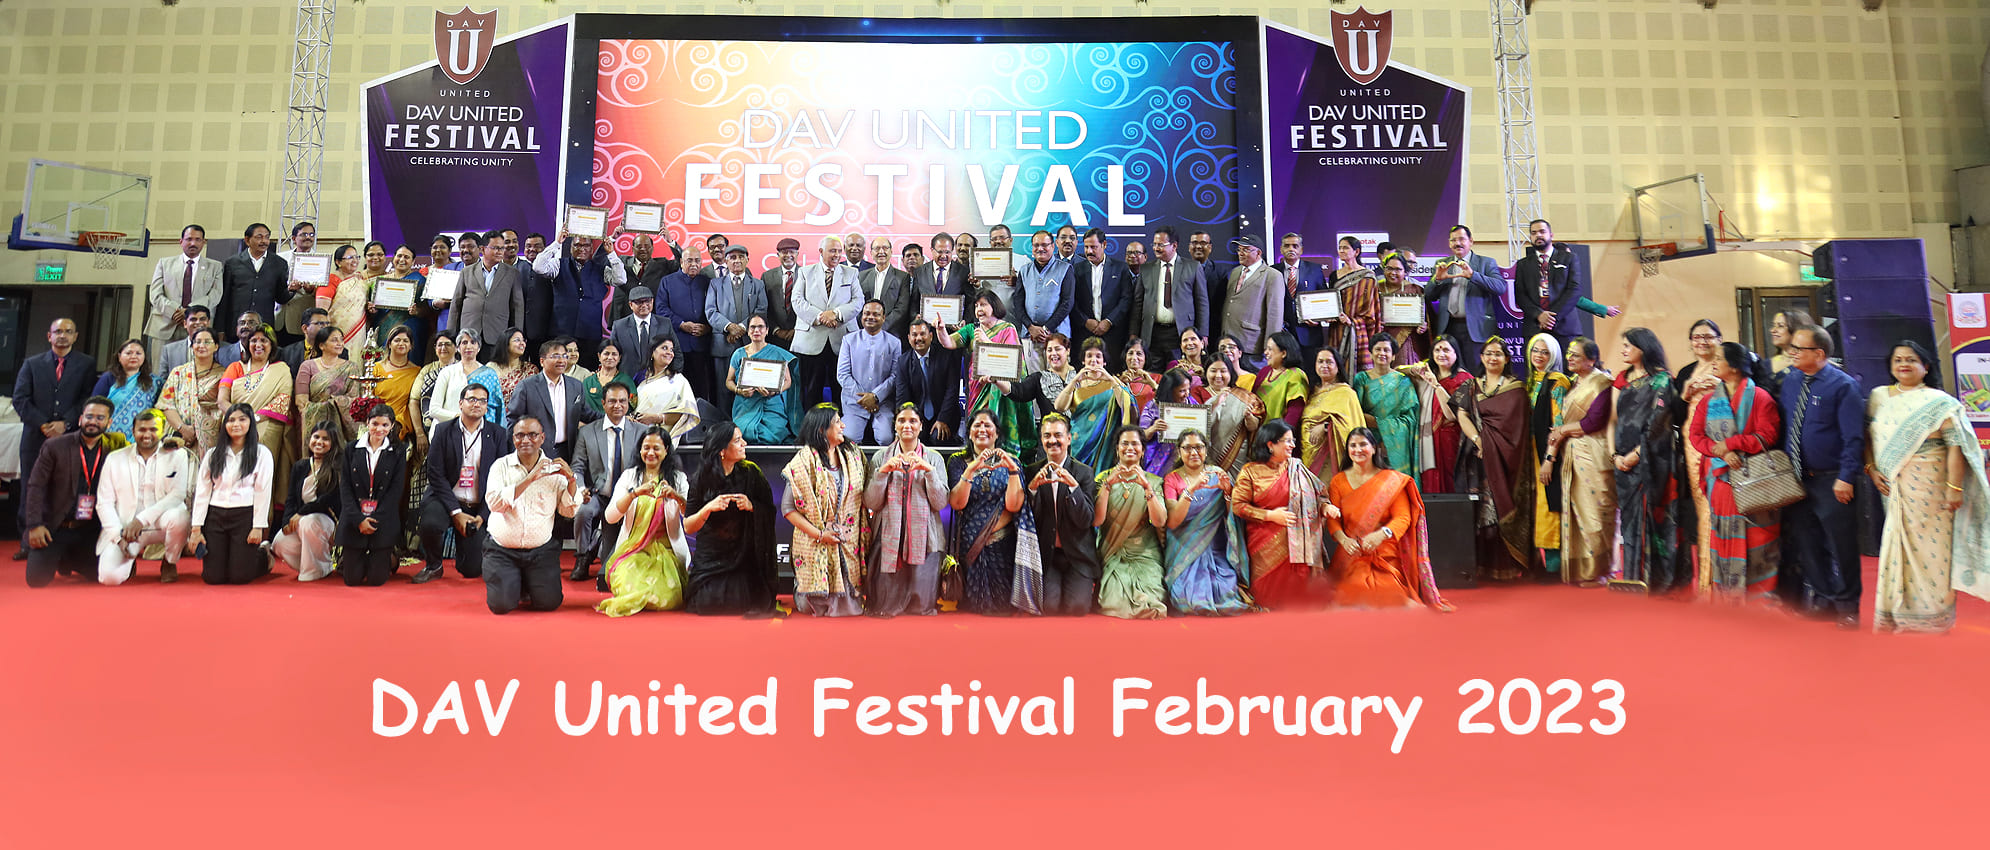 DAV United Festival February 2023